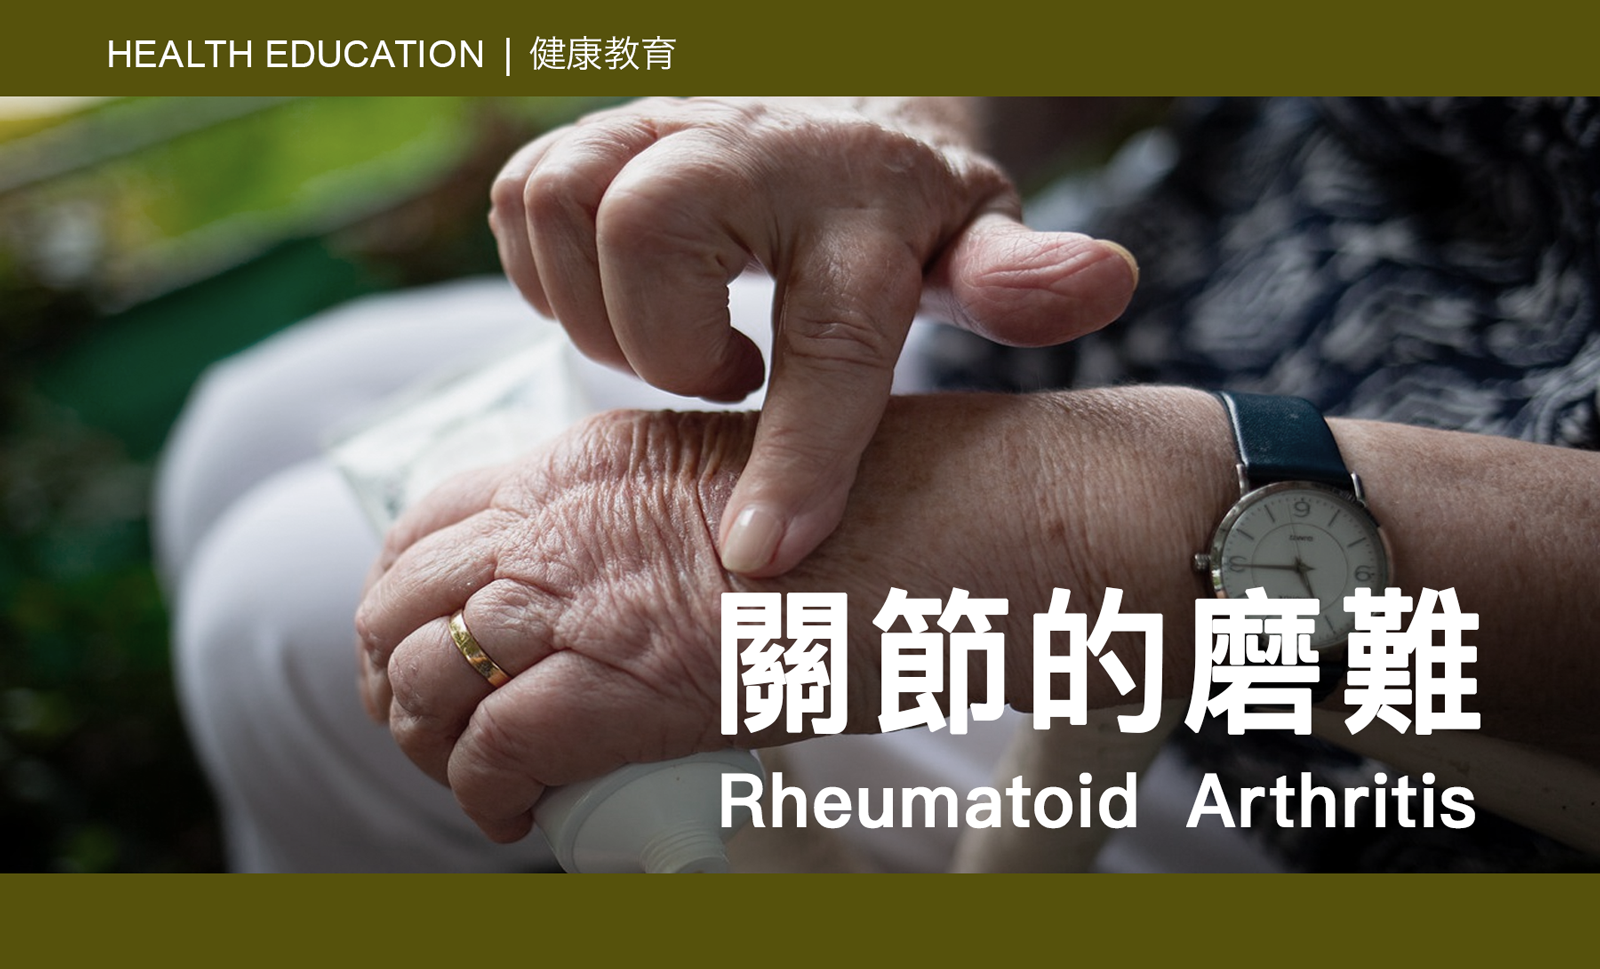 CAIPA Health Article | Rheumatoid Arthritis 關節的磨難